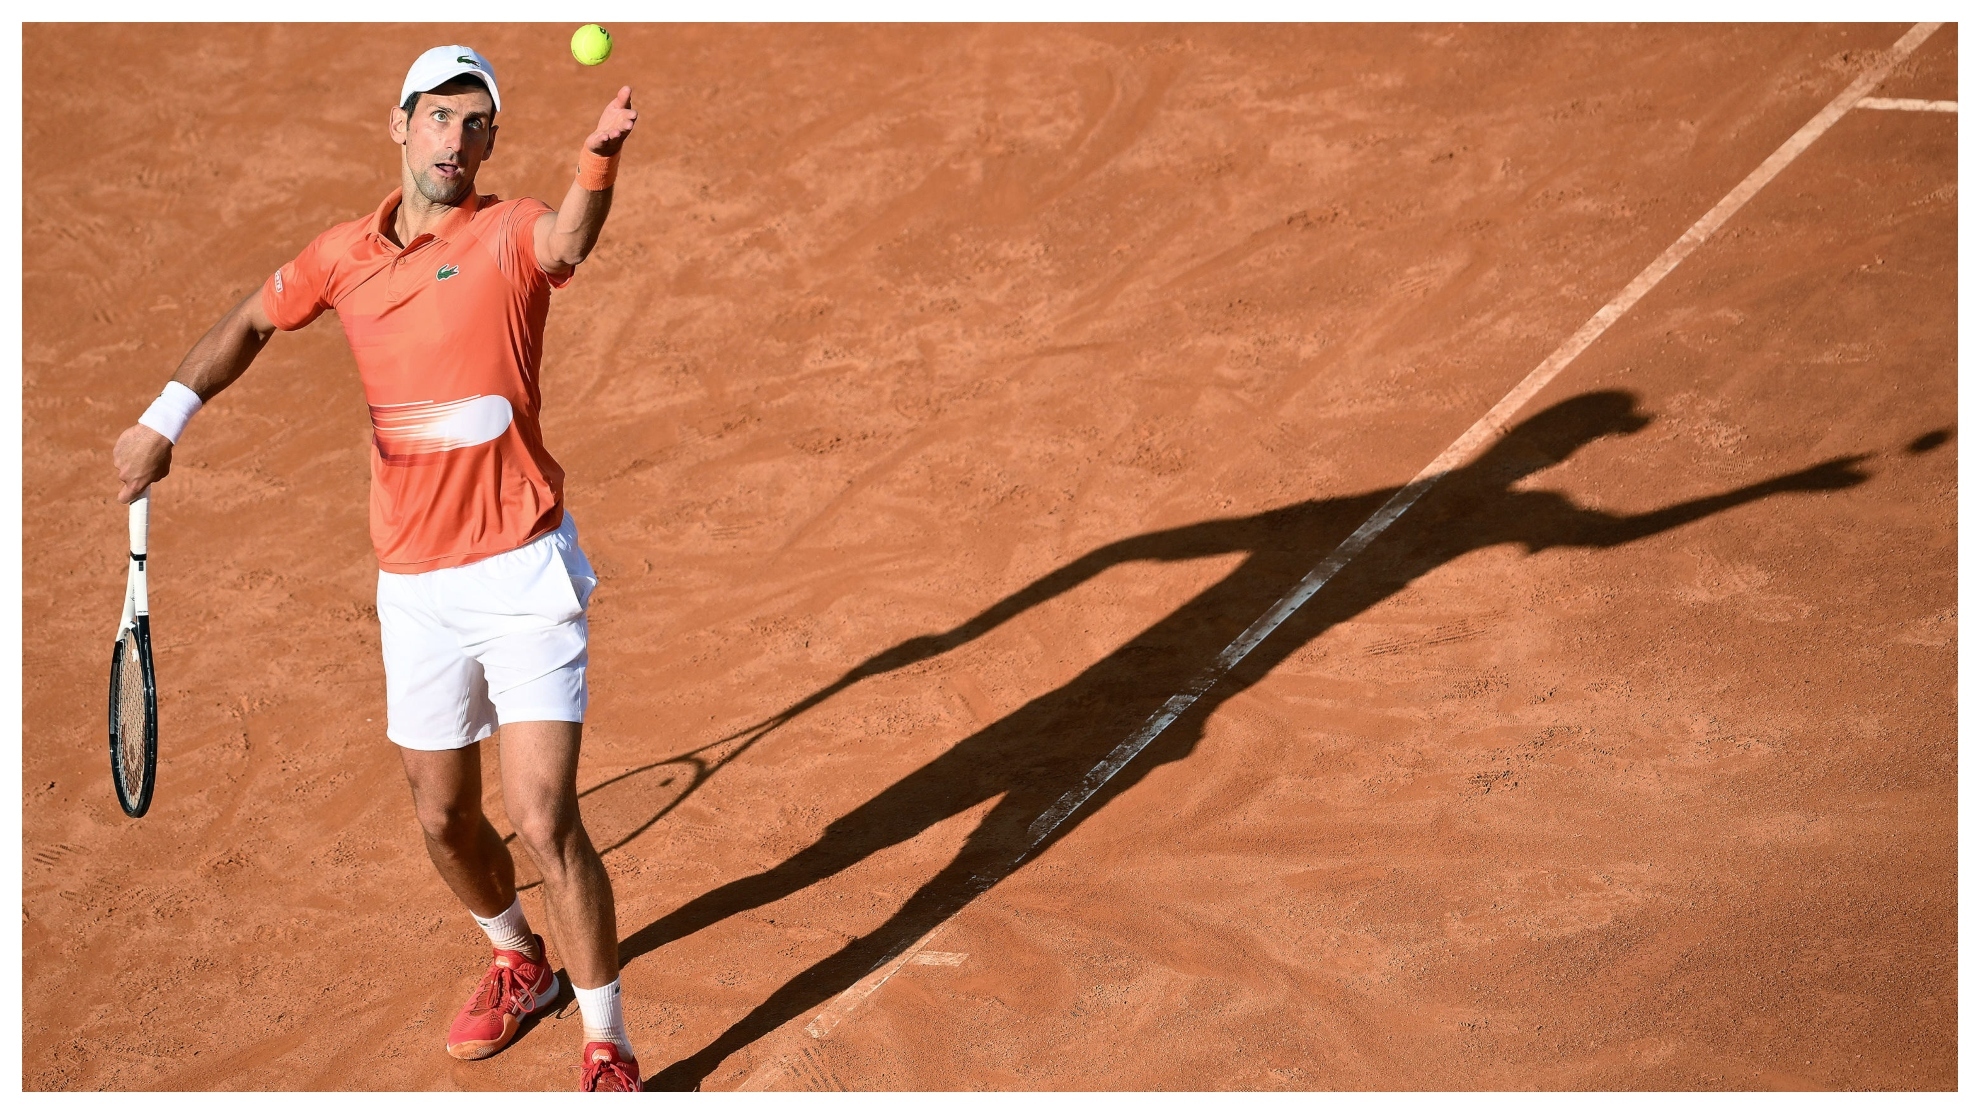 Saque de Novak Djokovic durante uno de sus partidos en el Masters 1000 de Roma 2022.